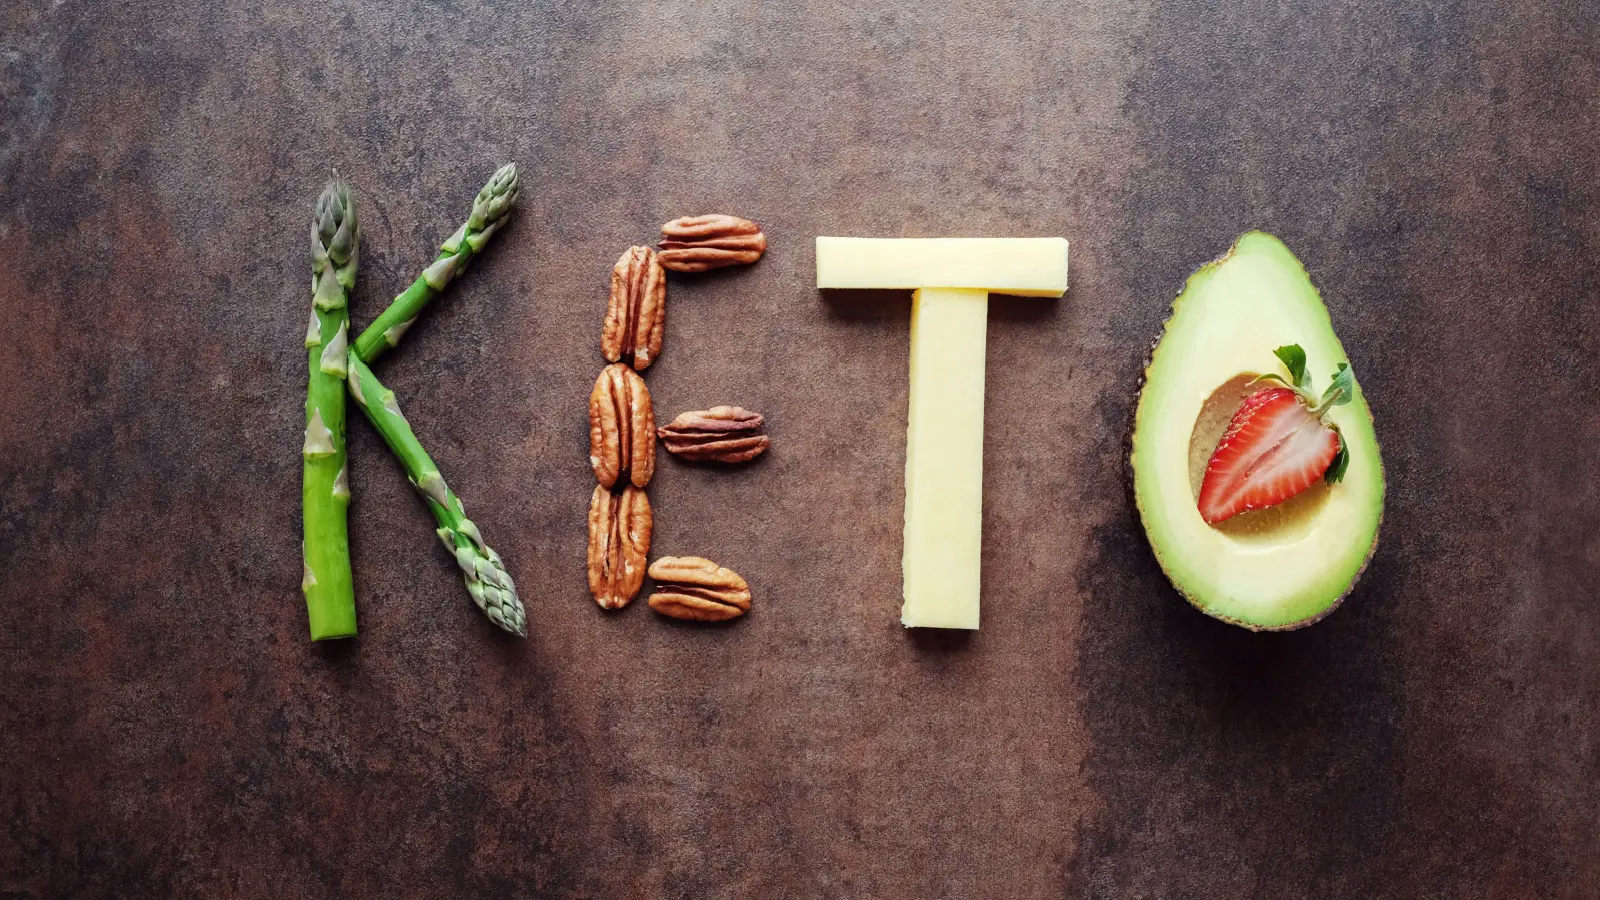 ما هي أنواع الكيتو دايت؟ وما الأطعمة التي يجب تجنبها؟